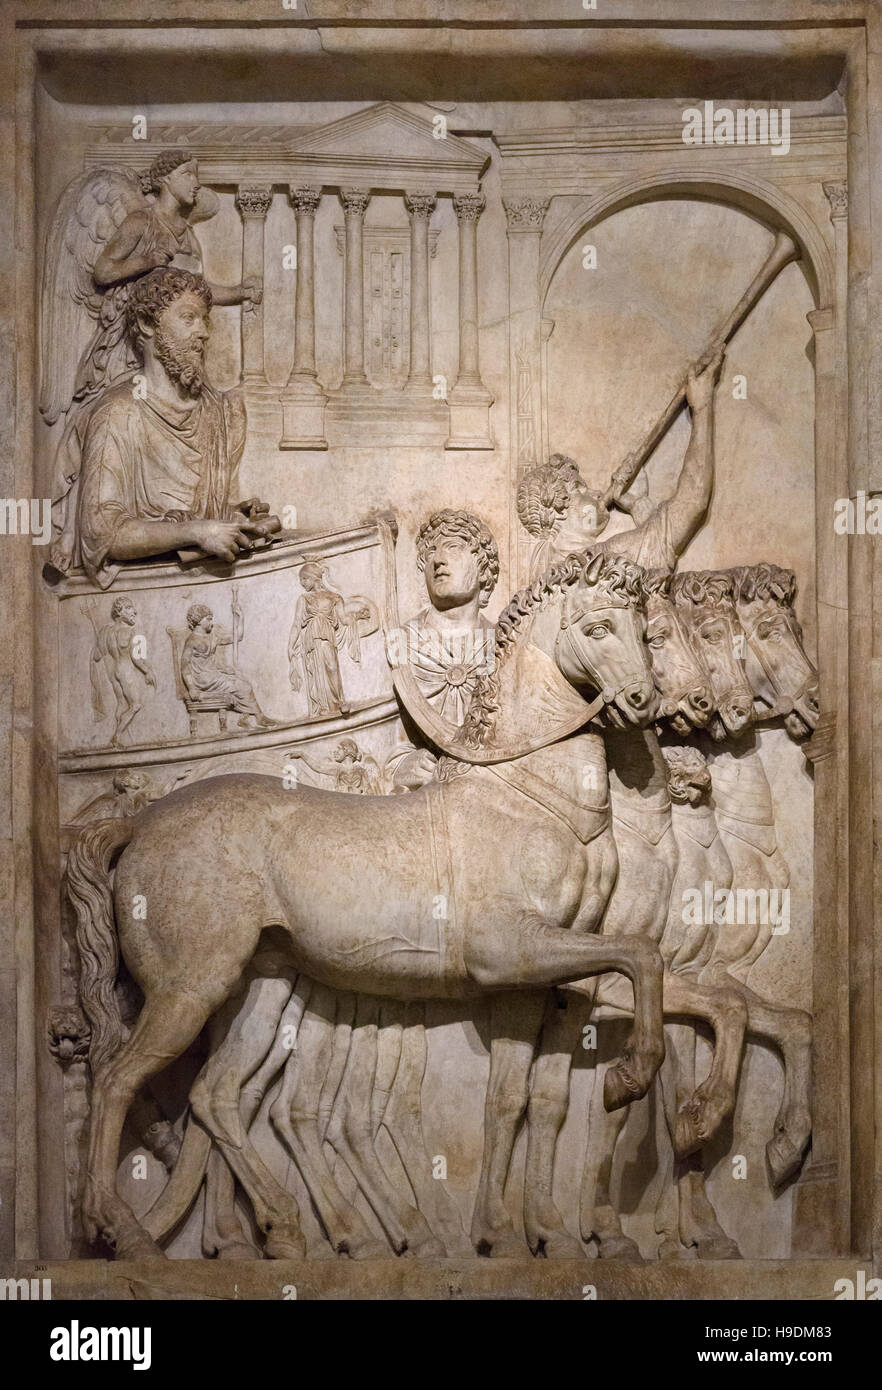 Rome. L'Italie. Panneau de secours (176-180 AD) représentant le triomphe de Marc-aurèle sur la peuples germaniques et les Sarmates, les musées du Capitole. Banque D'Images